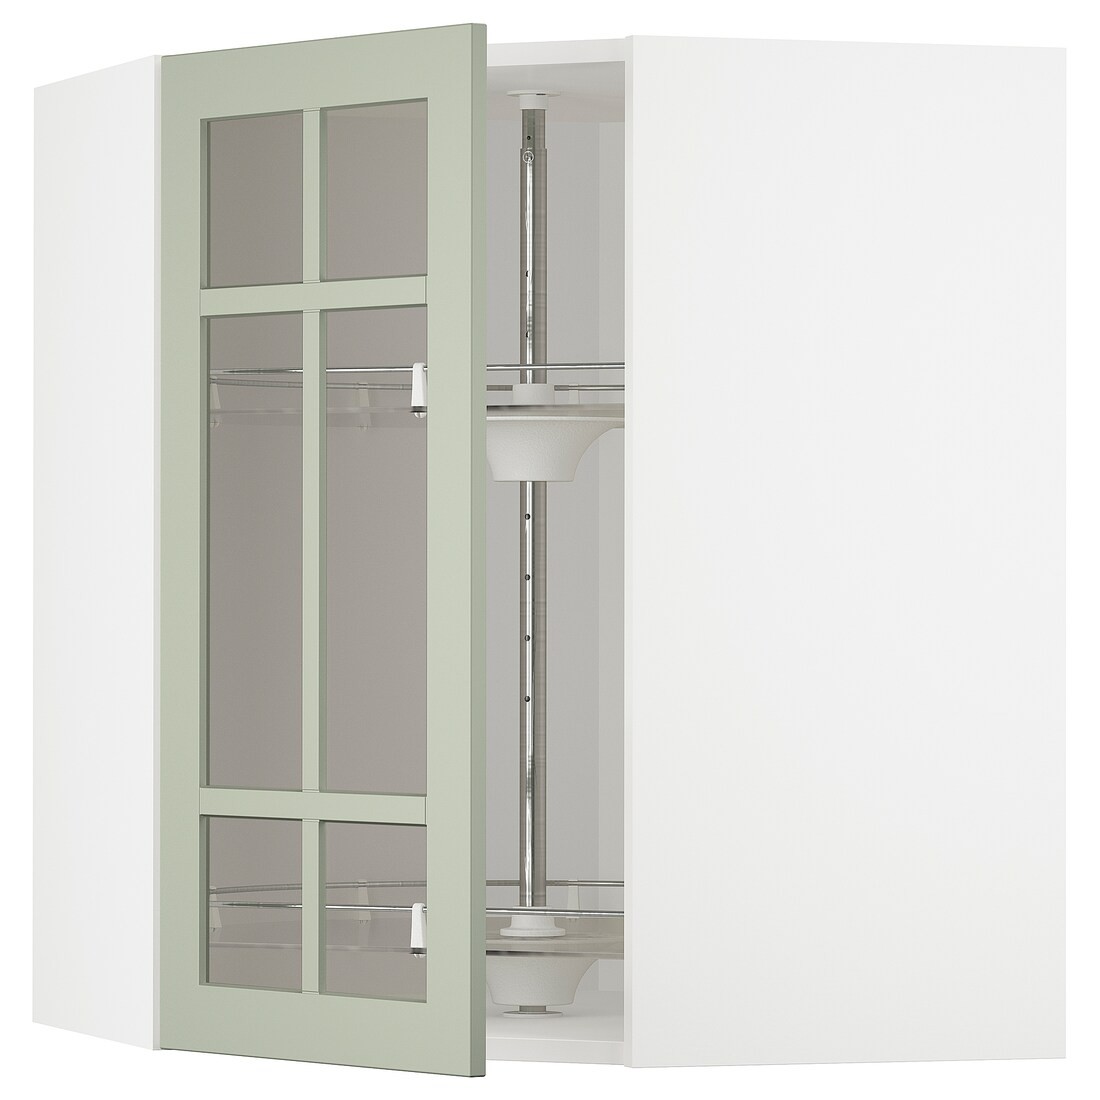 METOD МЕТОД Угловой настенный шкаф с каруселью / стеклянная дверь, белый / Stensund светло-зеленый, 68x80 см